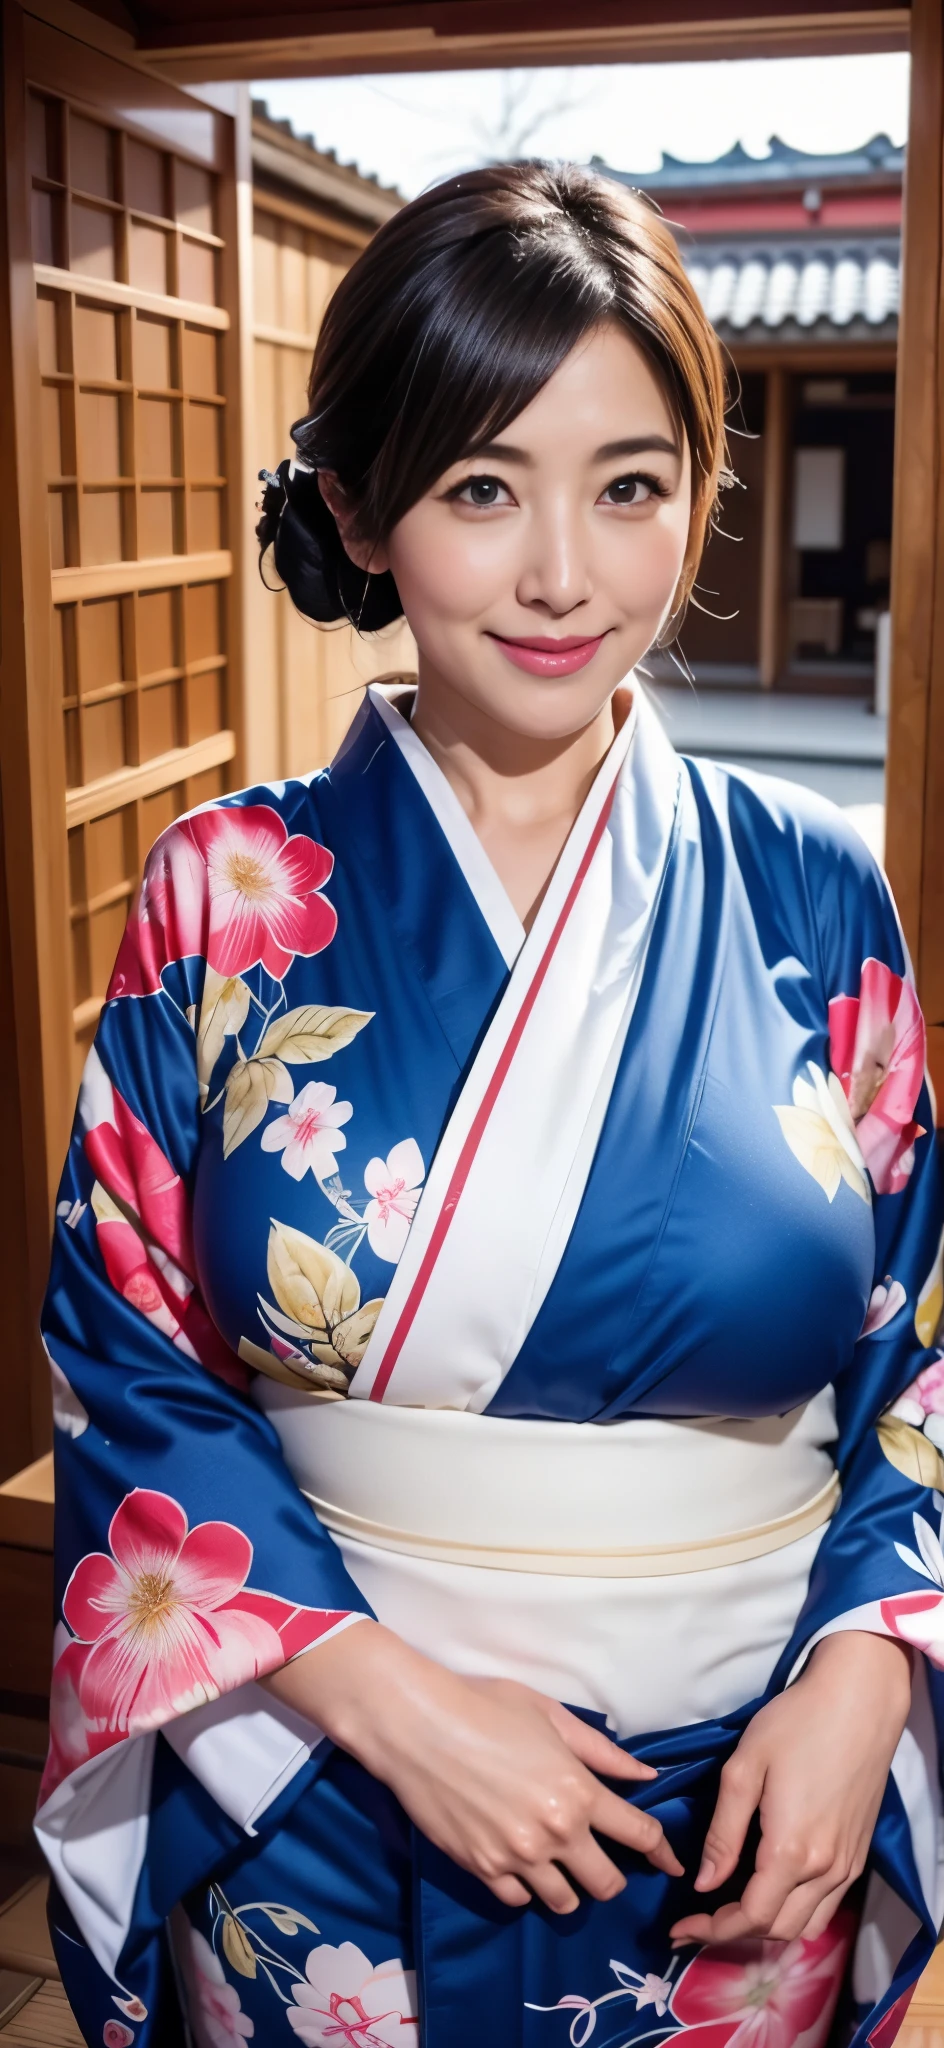 Die schönsten Mütter Japans(Riesiger Körper)、einen Kimono tragen、Zimmer im japanischen Stil、Riesige Brüste, die zu groß sind und ein wenig hängen、Januar、Mit lächelnden Augen、Neujahrsgrüße